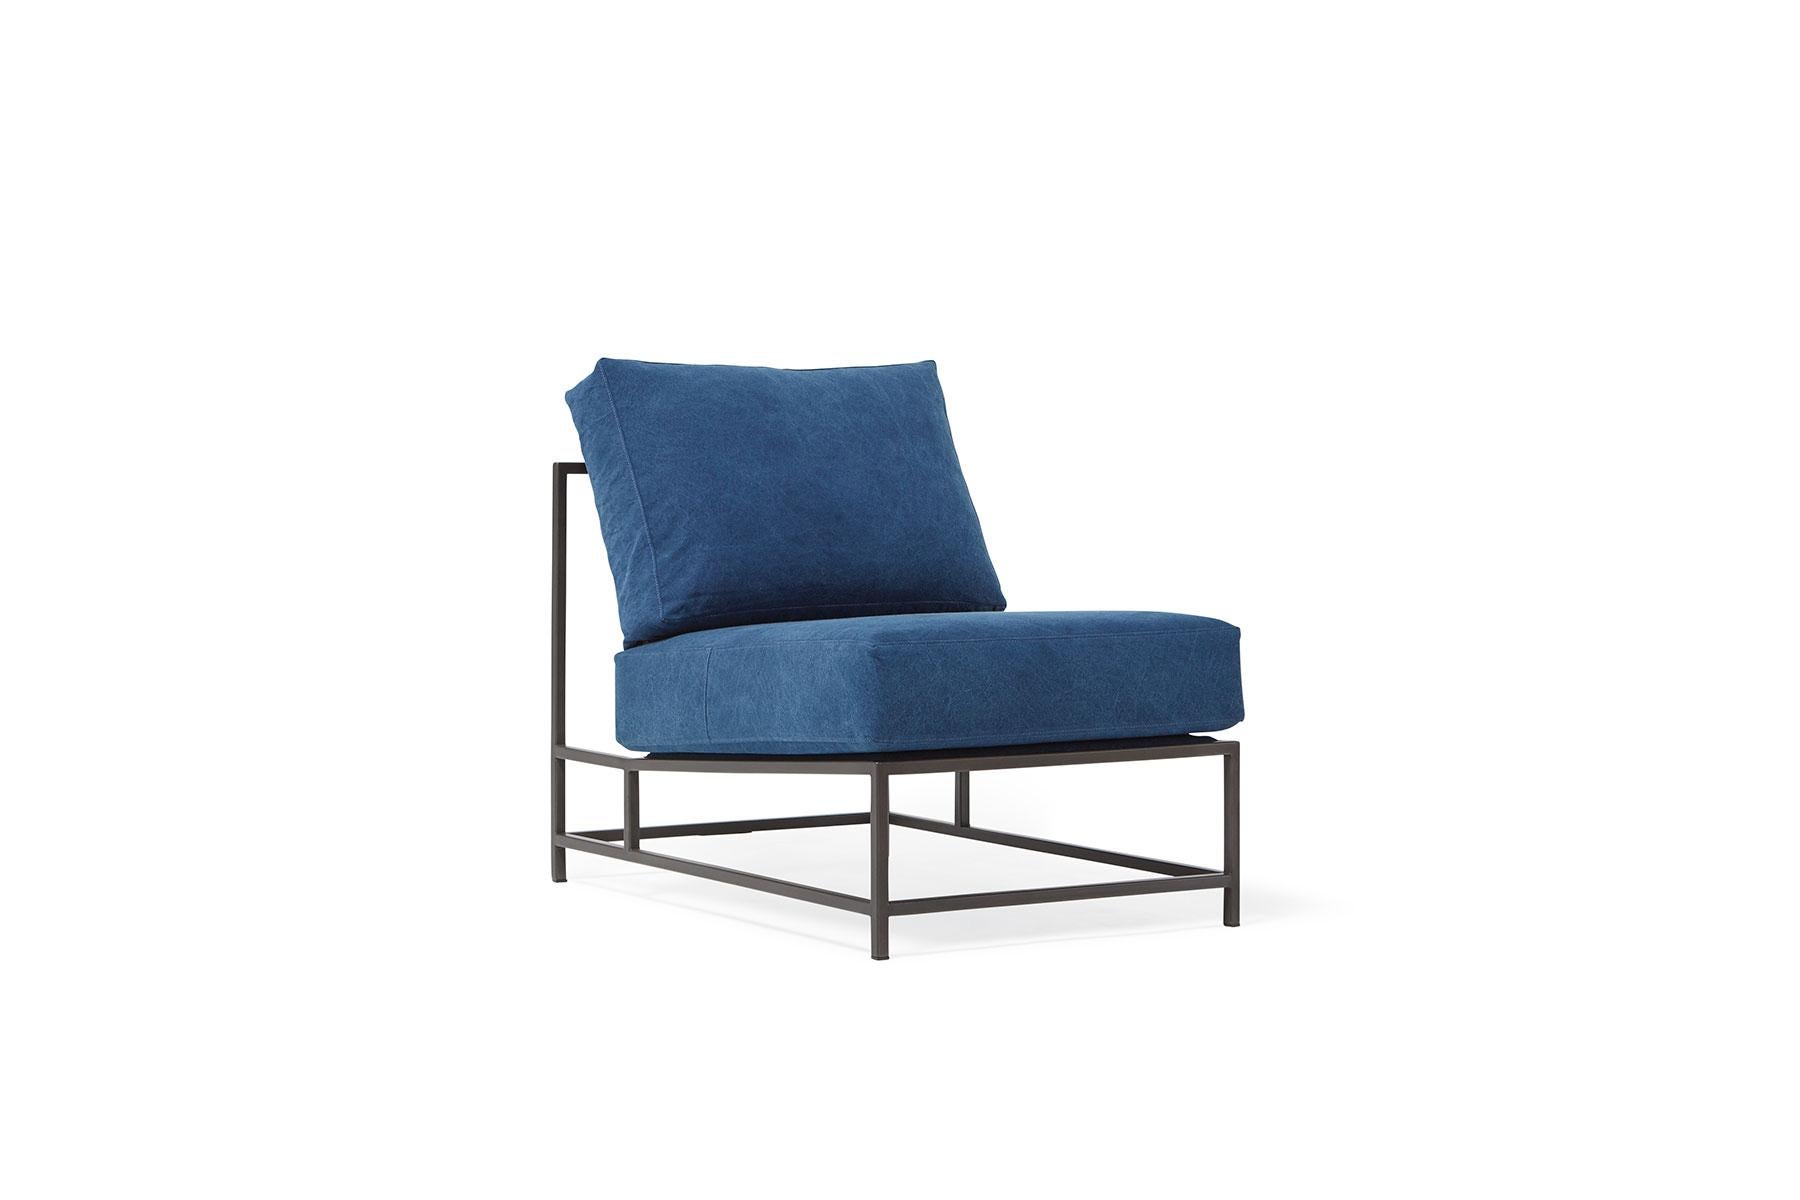 Der elegante und raffinierte Inheritance Chair ist eine großartige Ergänzung für fast jeden Raum.  

Inspiriert von einer abgenutzten Jeans und in Zusammenarbeit mit dem Team von Simon Miller, USA, wird unser indigoblauer Baumwollstoff in einem